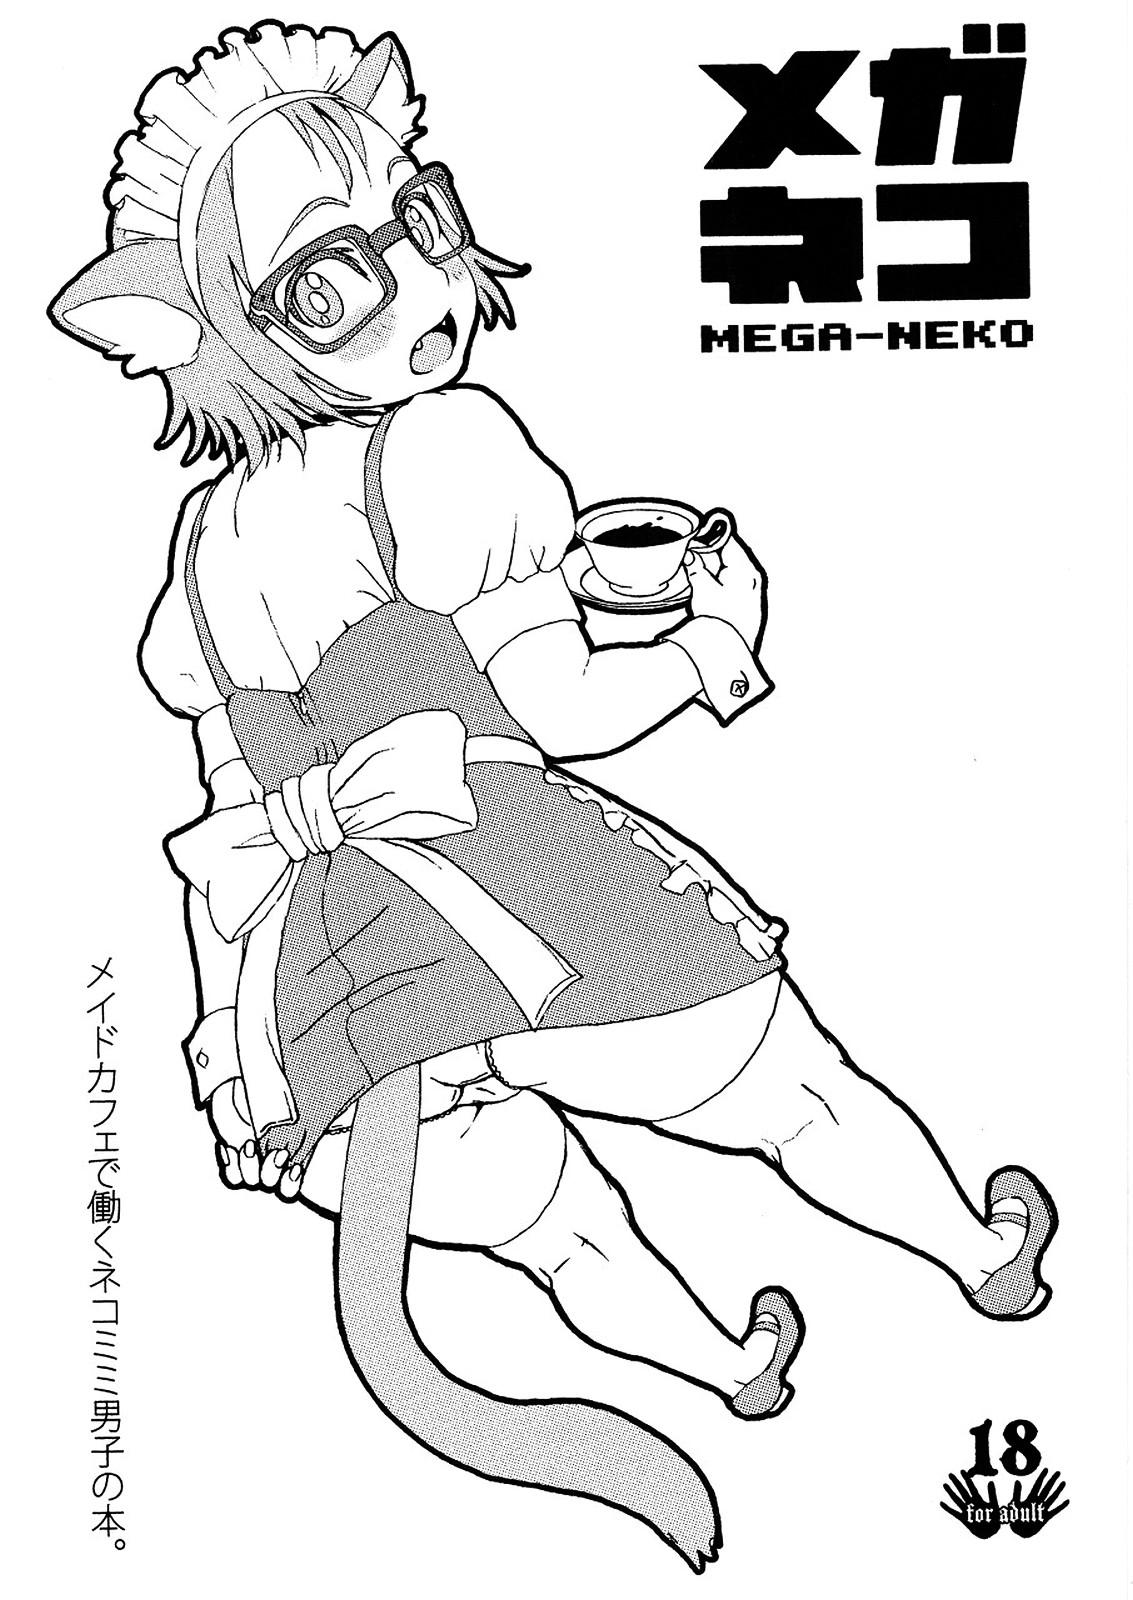 Throat MEGA-NEKO - Pokemon Outdoors - Page 1